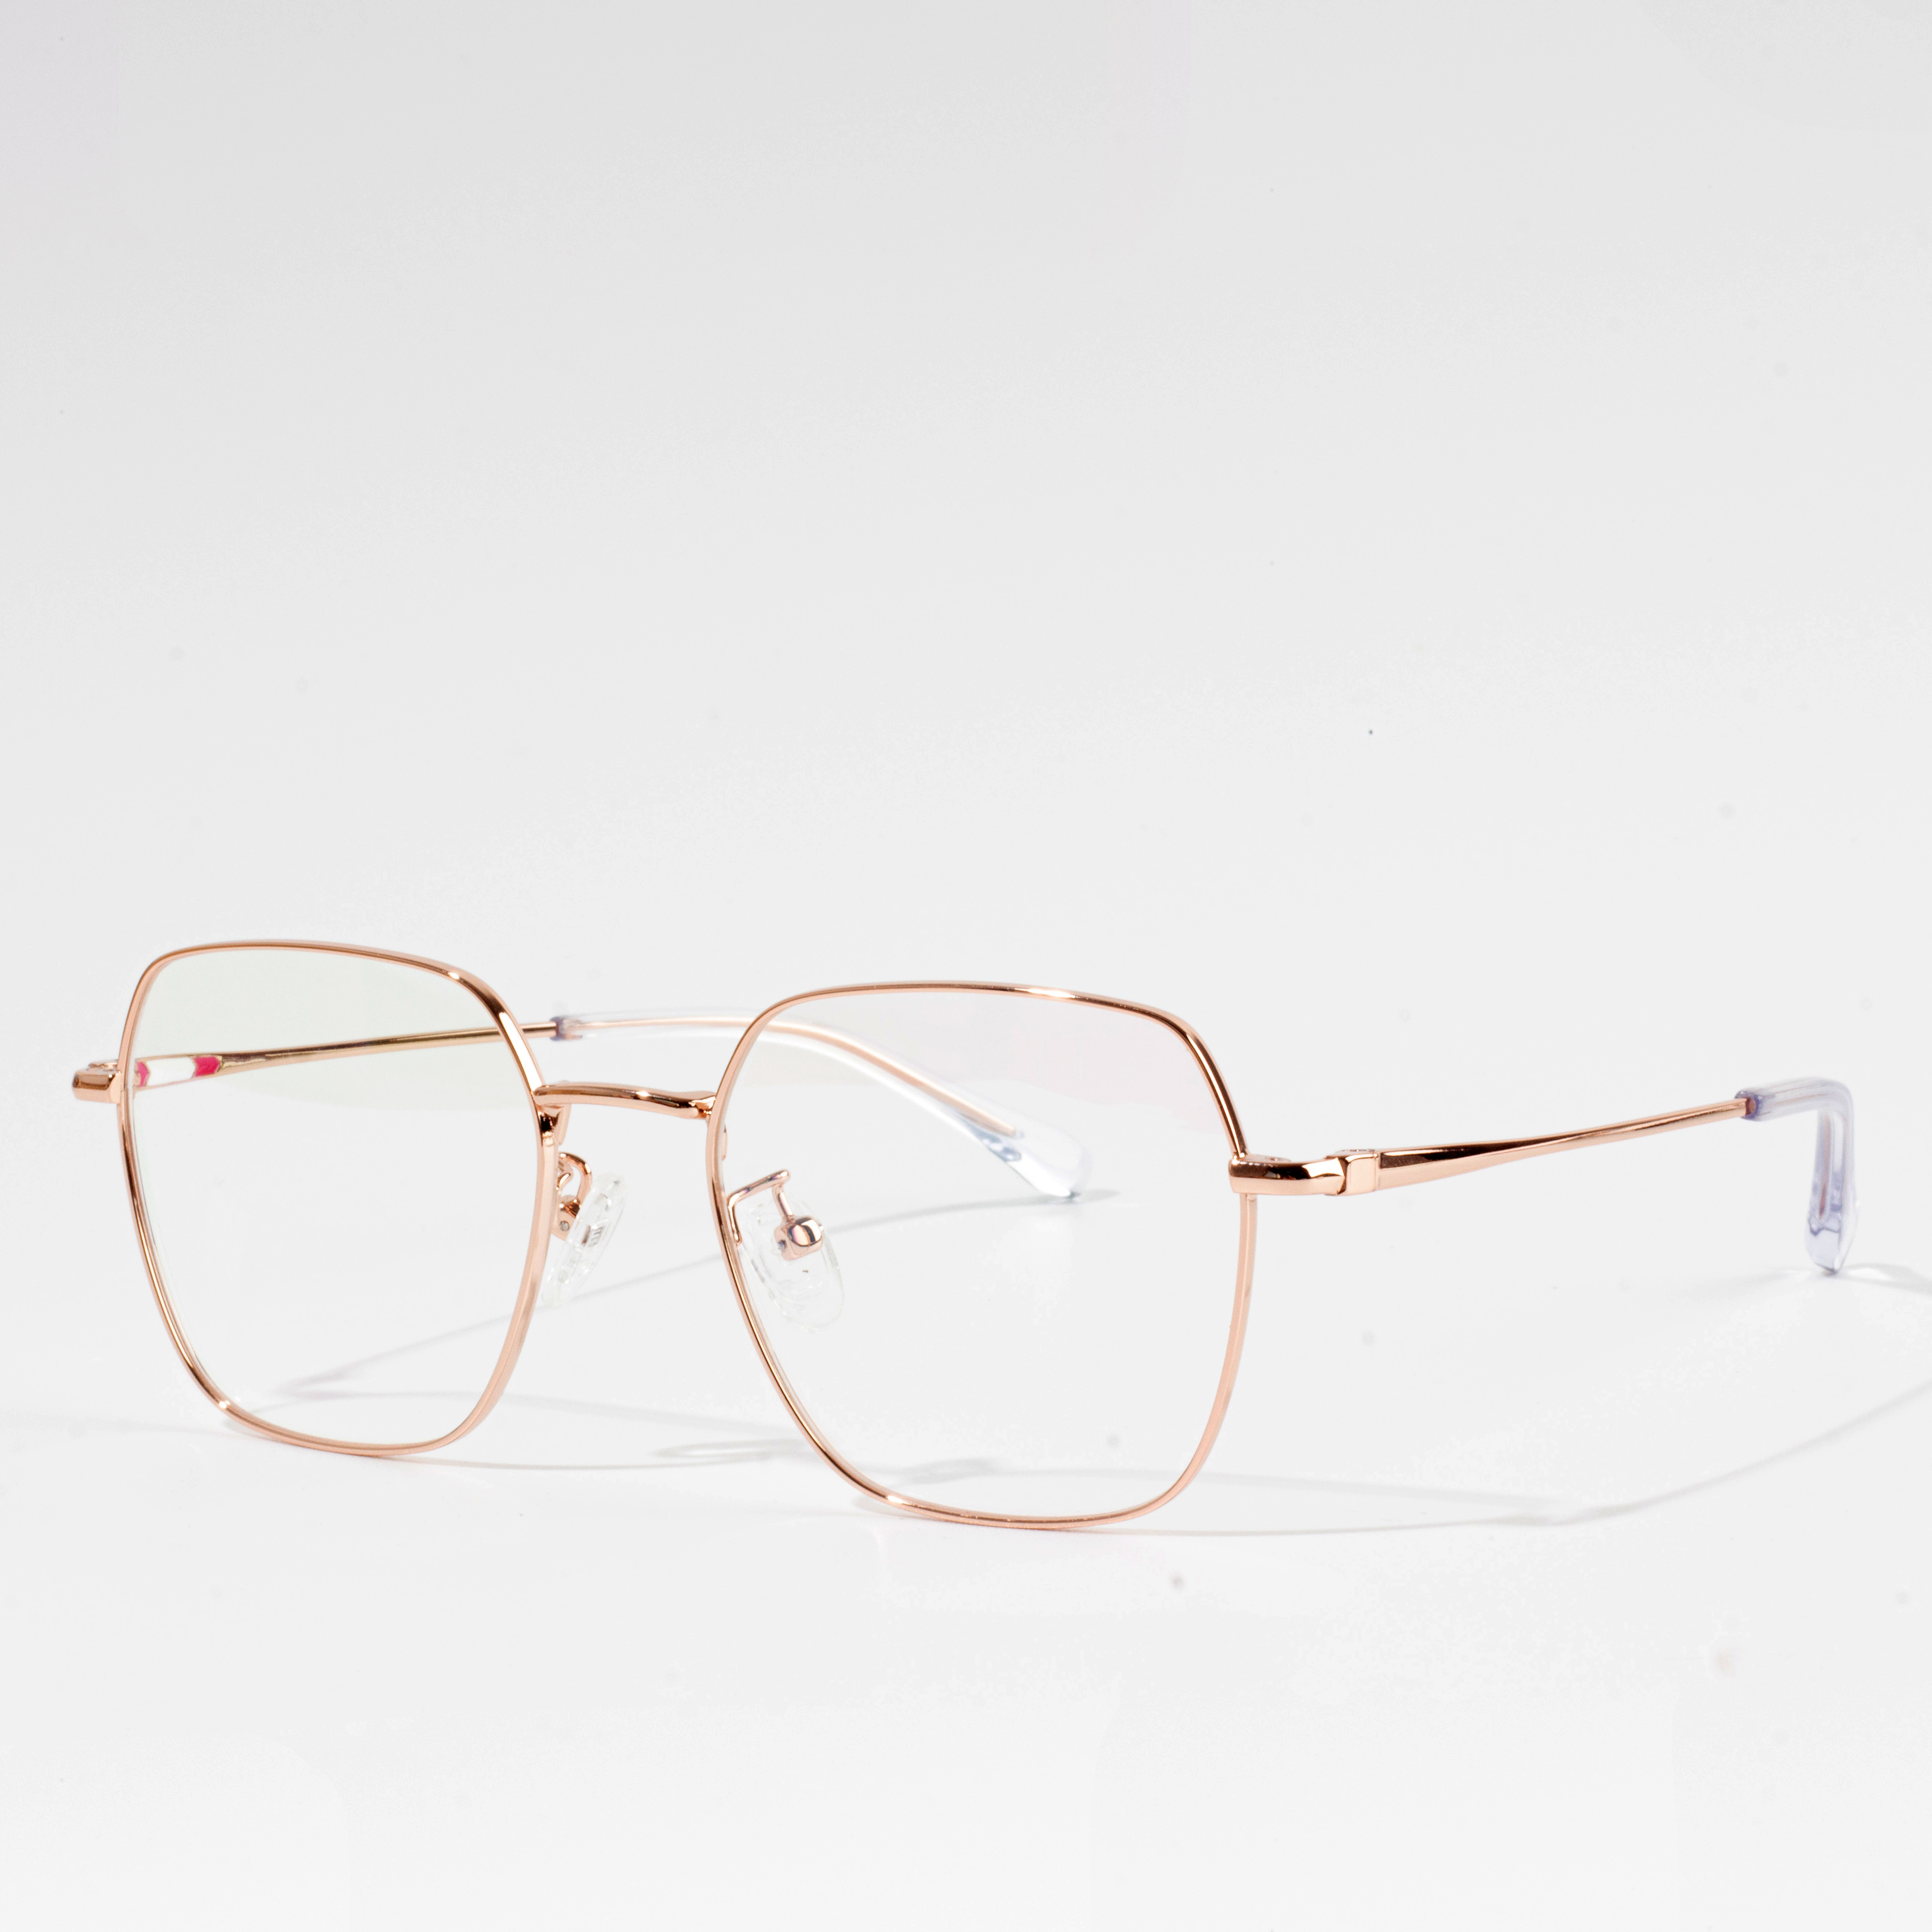 labing maayo nga eyeglass frame manufacturers